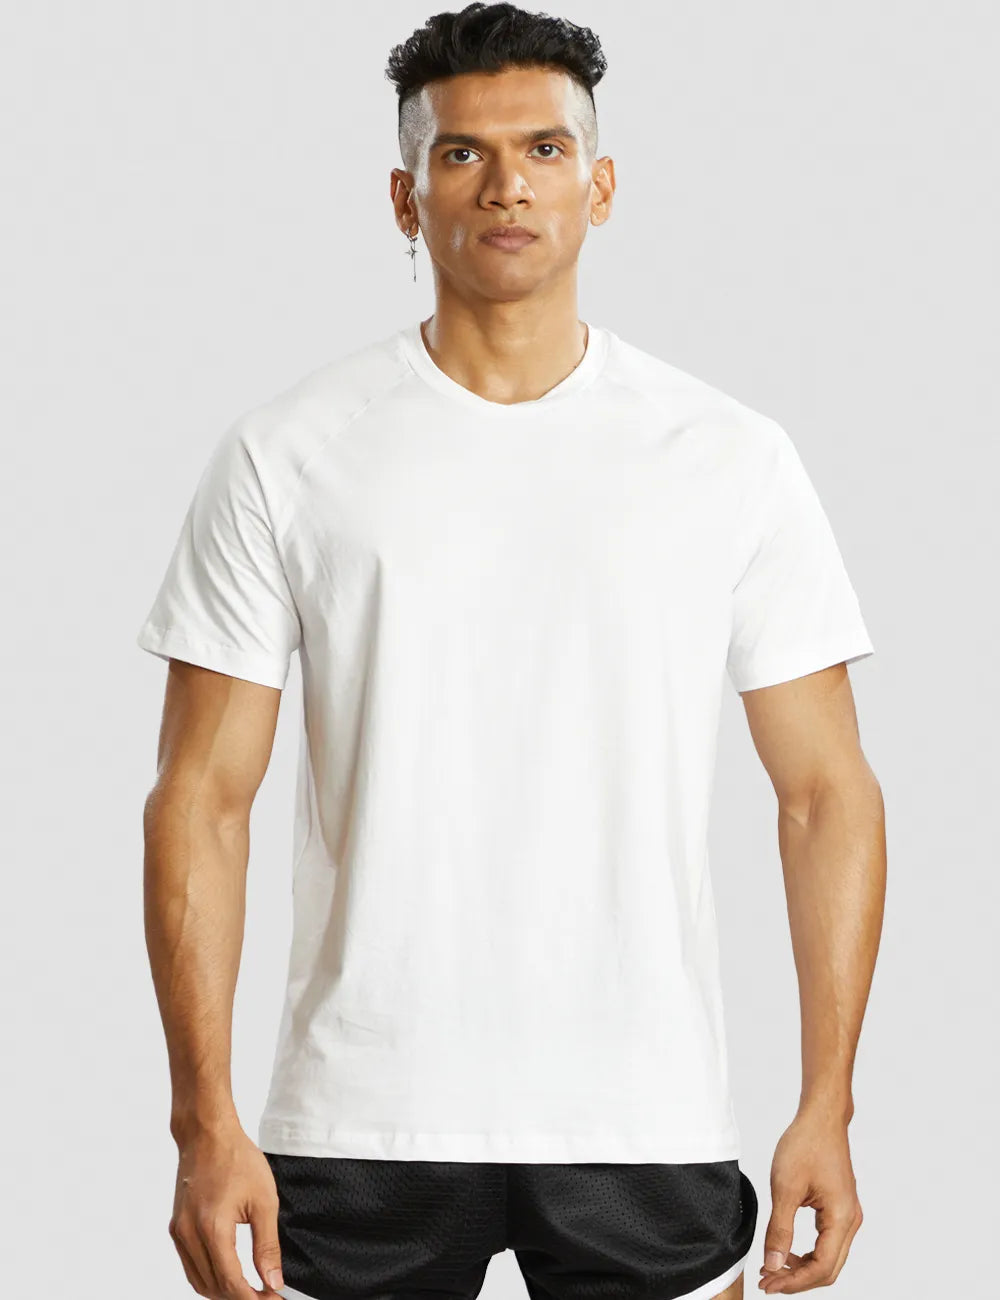 Muscle Fit T-shirt Men